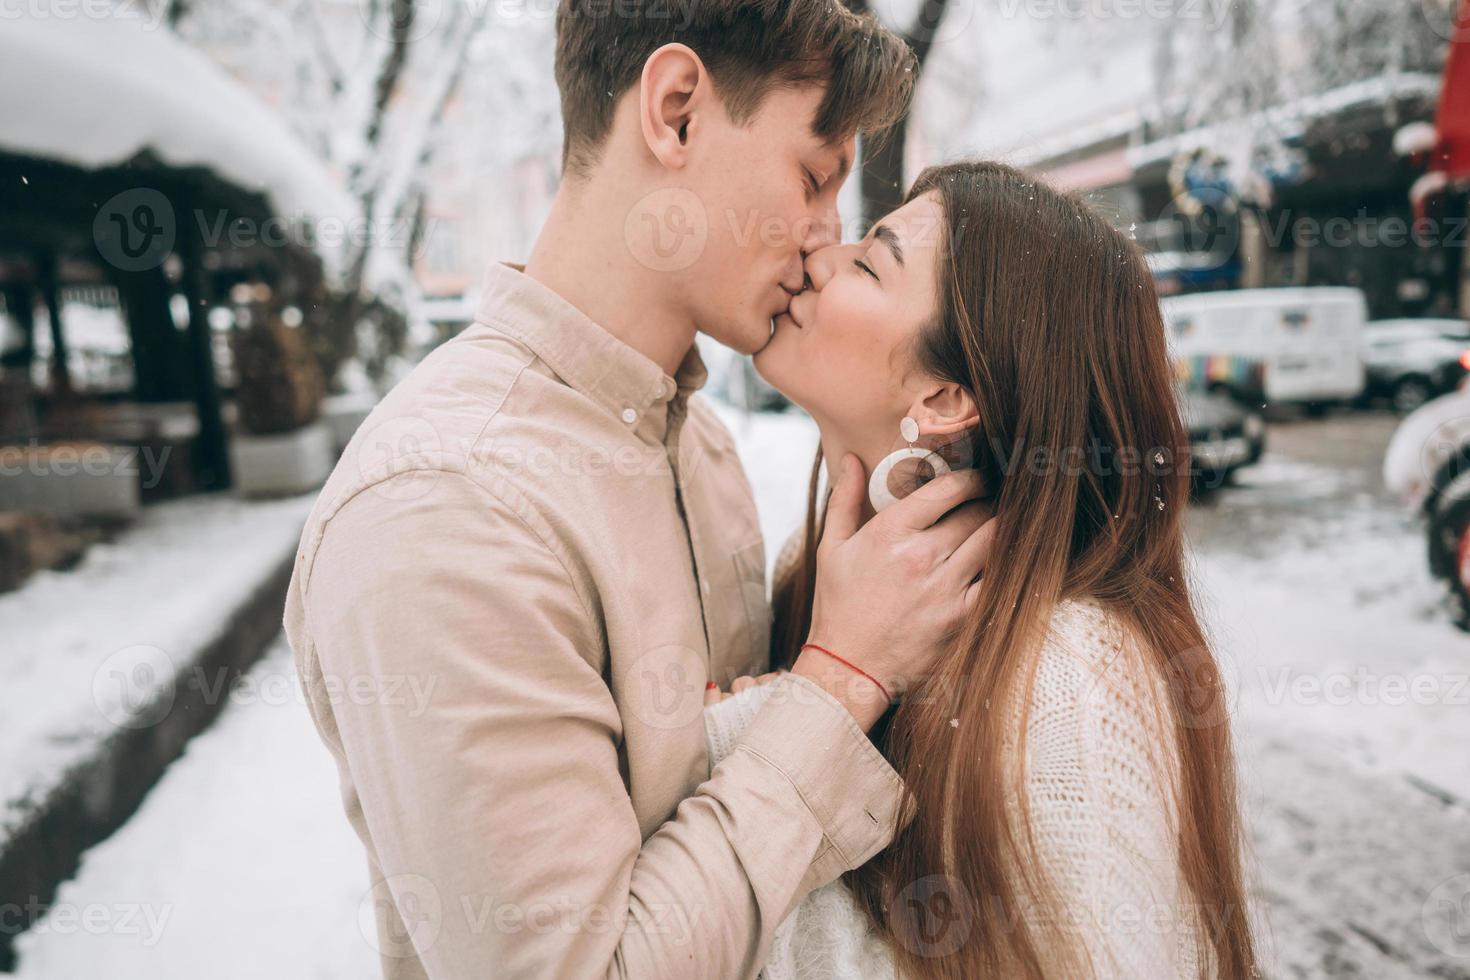 rapaz e linda garota se beijam em um parque nevado foto